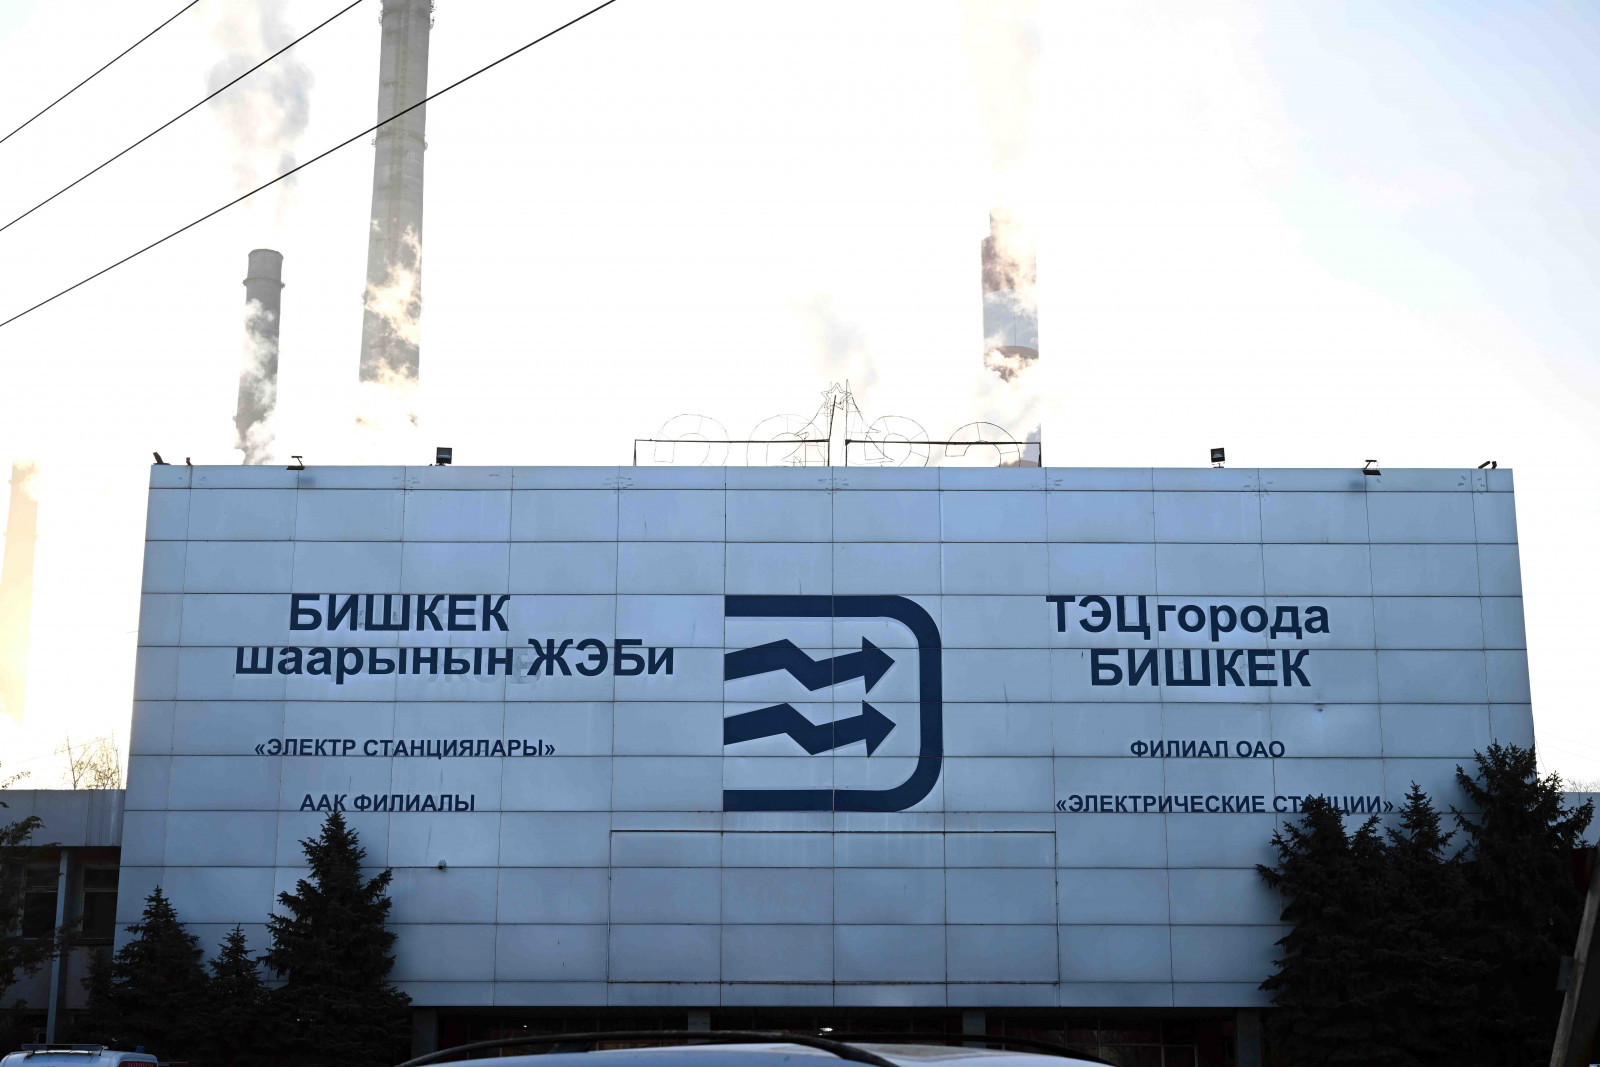 Минфину передали имущественные комплексы ТЭЦ Бишкека и «Бишкектеплосеть»